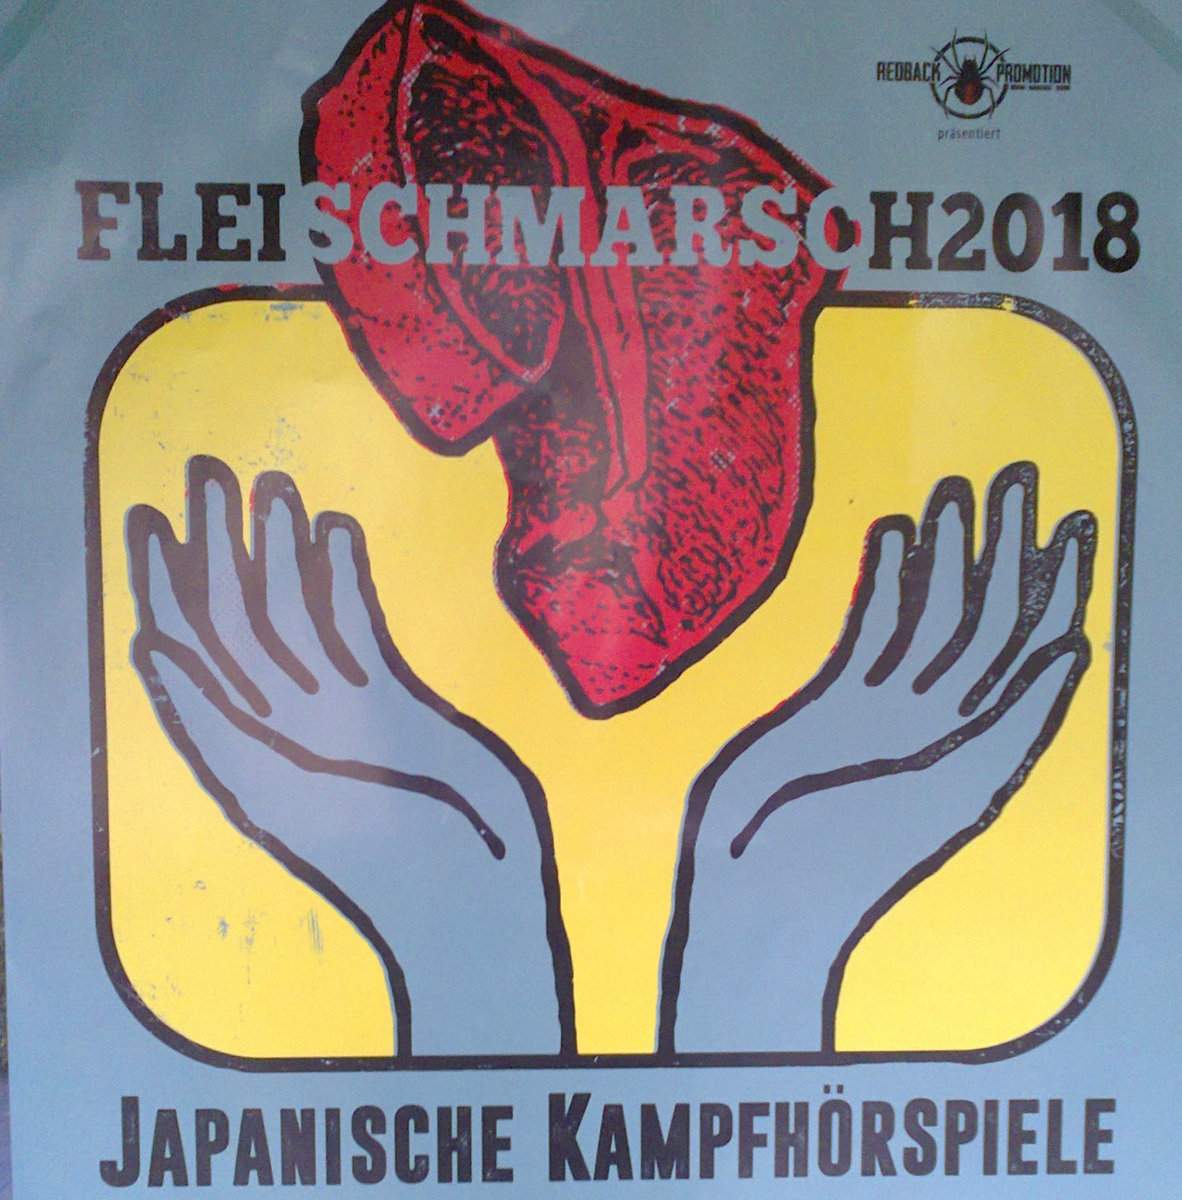 JAPANISCHE KAMPFHÖRSPIELE - Fleischmarsch 2018 cover 